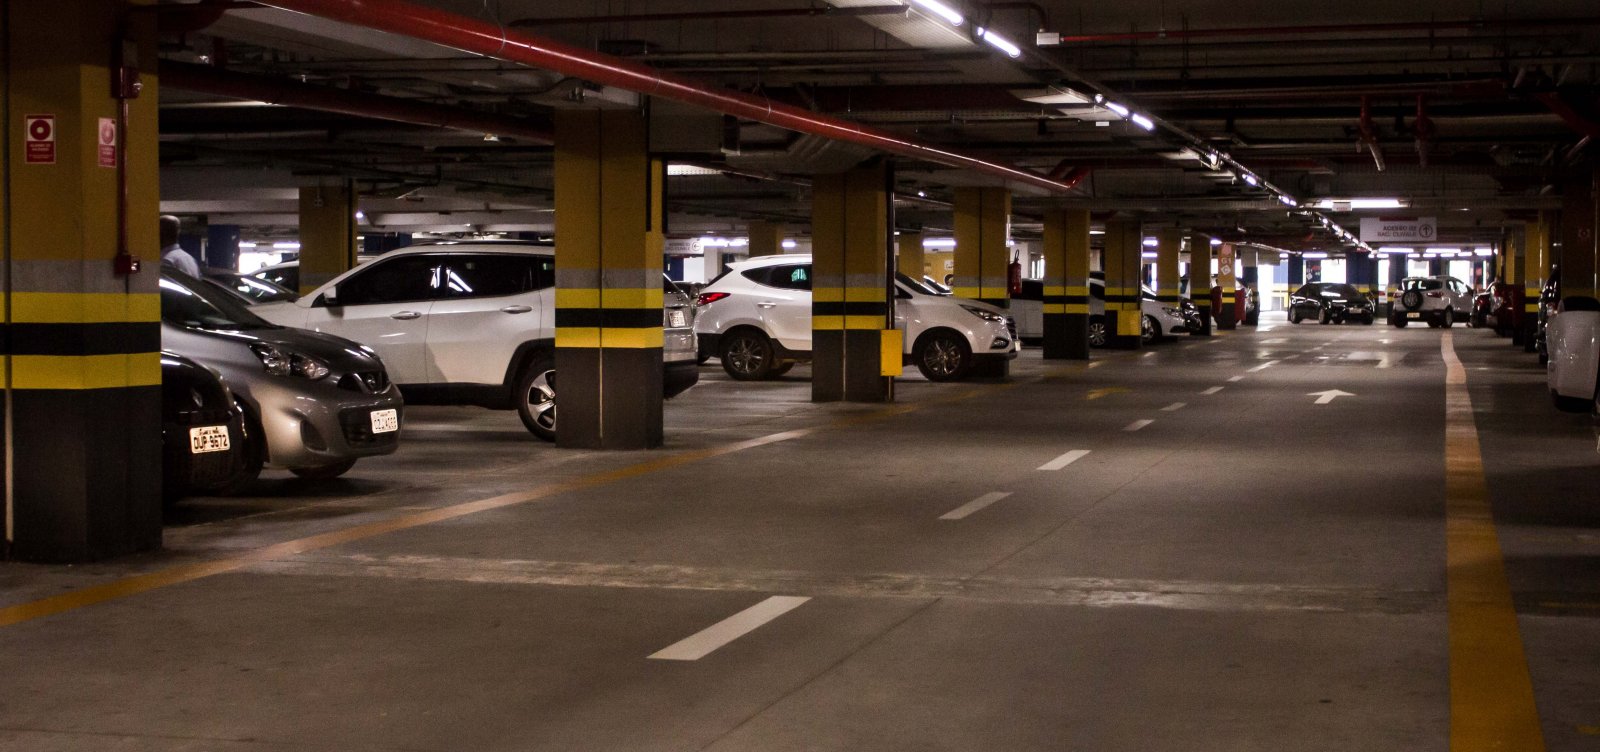 Procon-PB fiscaliza aplicação da Lei de tolerância de 20 minutos em estacionamentos de Campina Grande